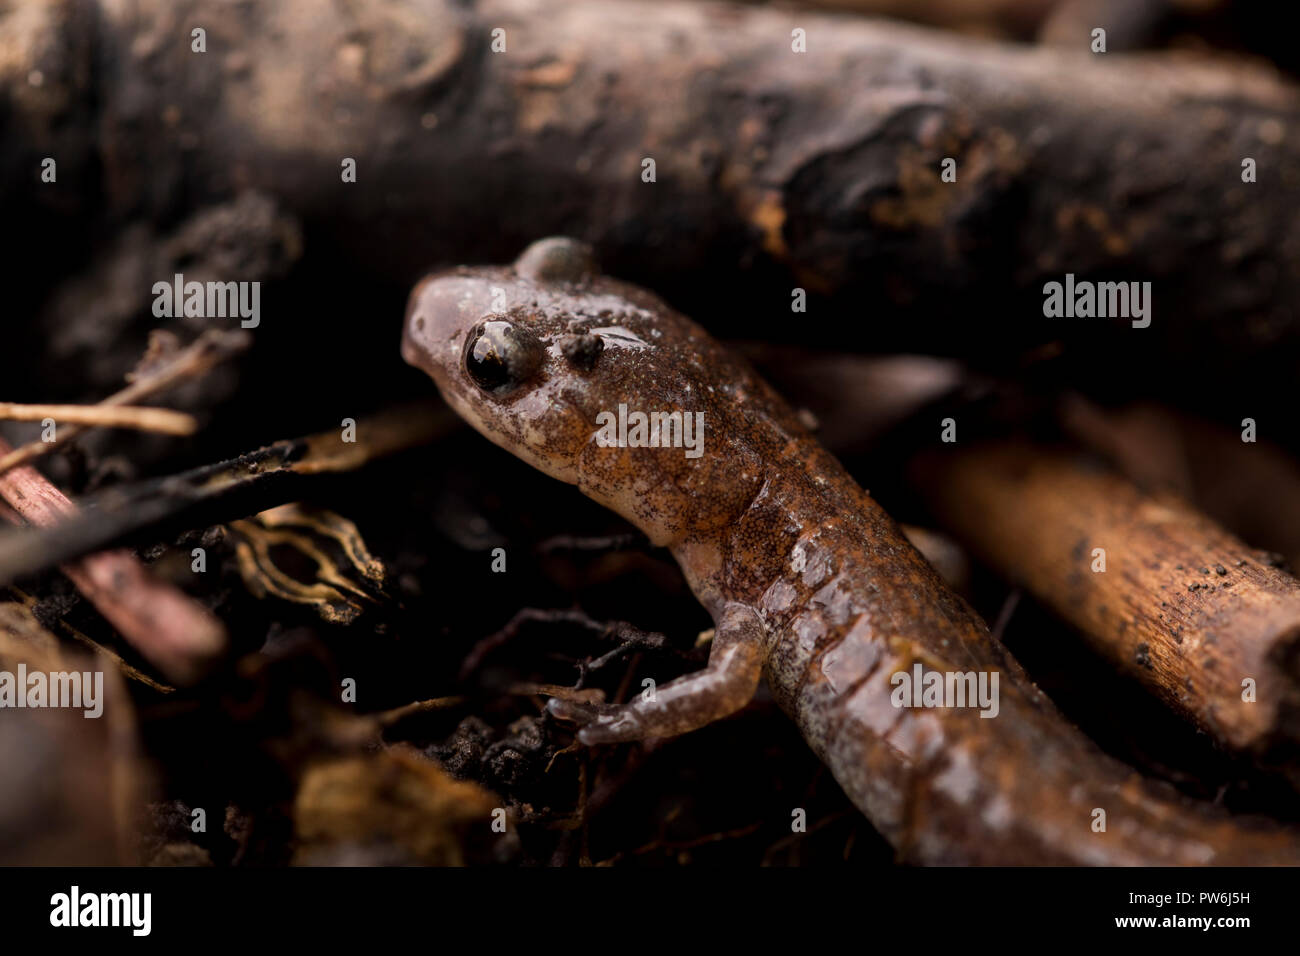 Salamander Lizard Close Up Cute Little Reptile Hidden Among The